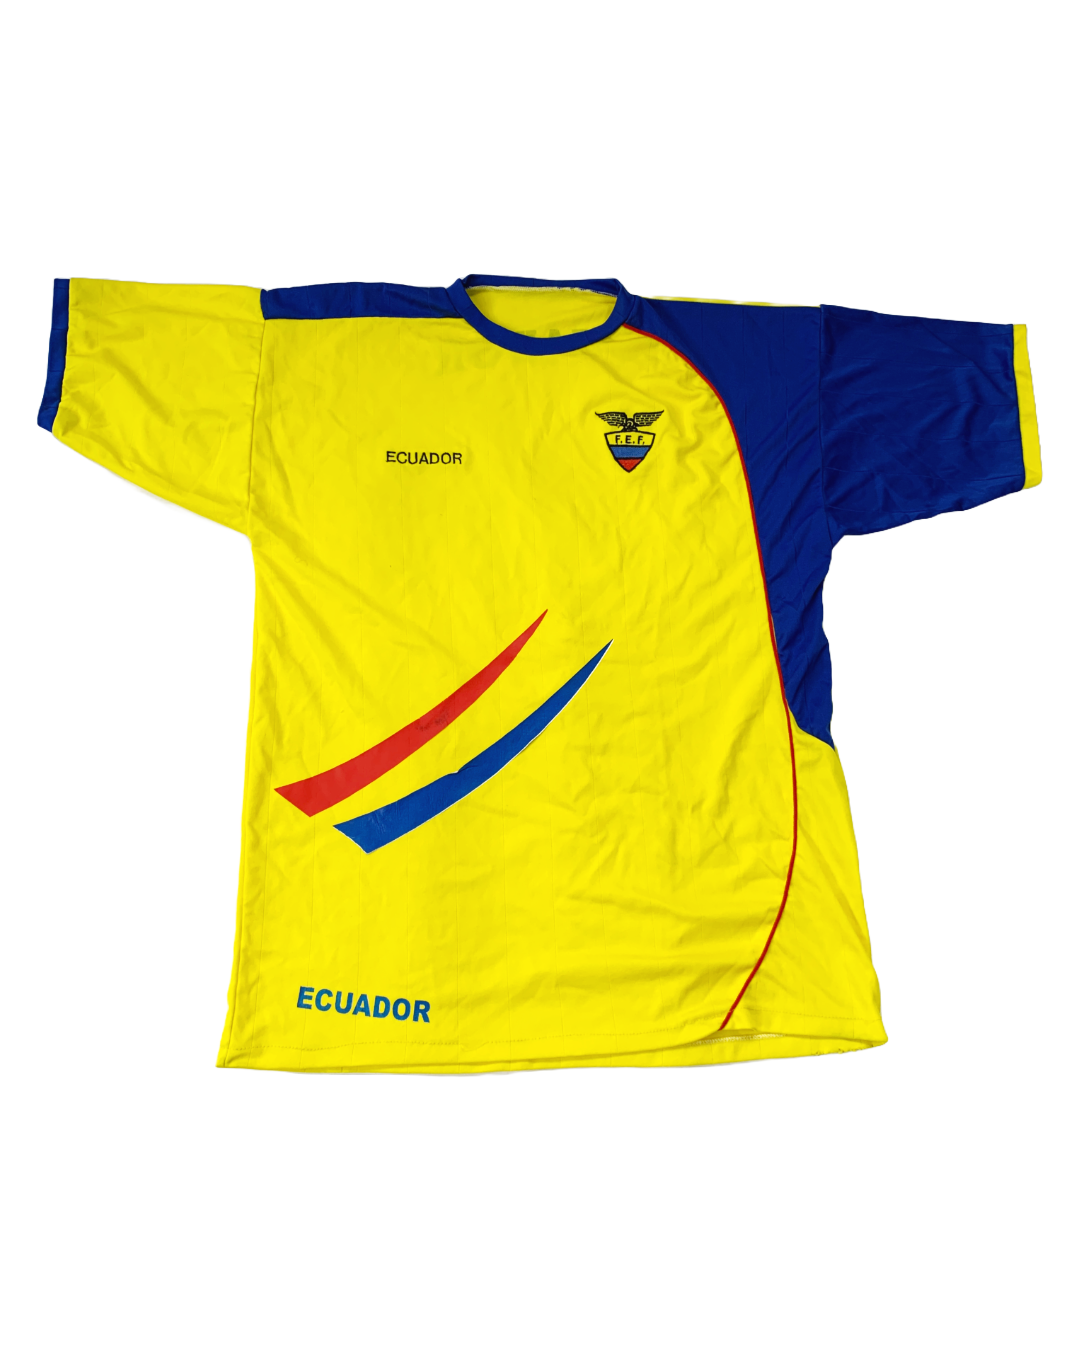 Ecuador Vintage Jersey - M